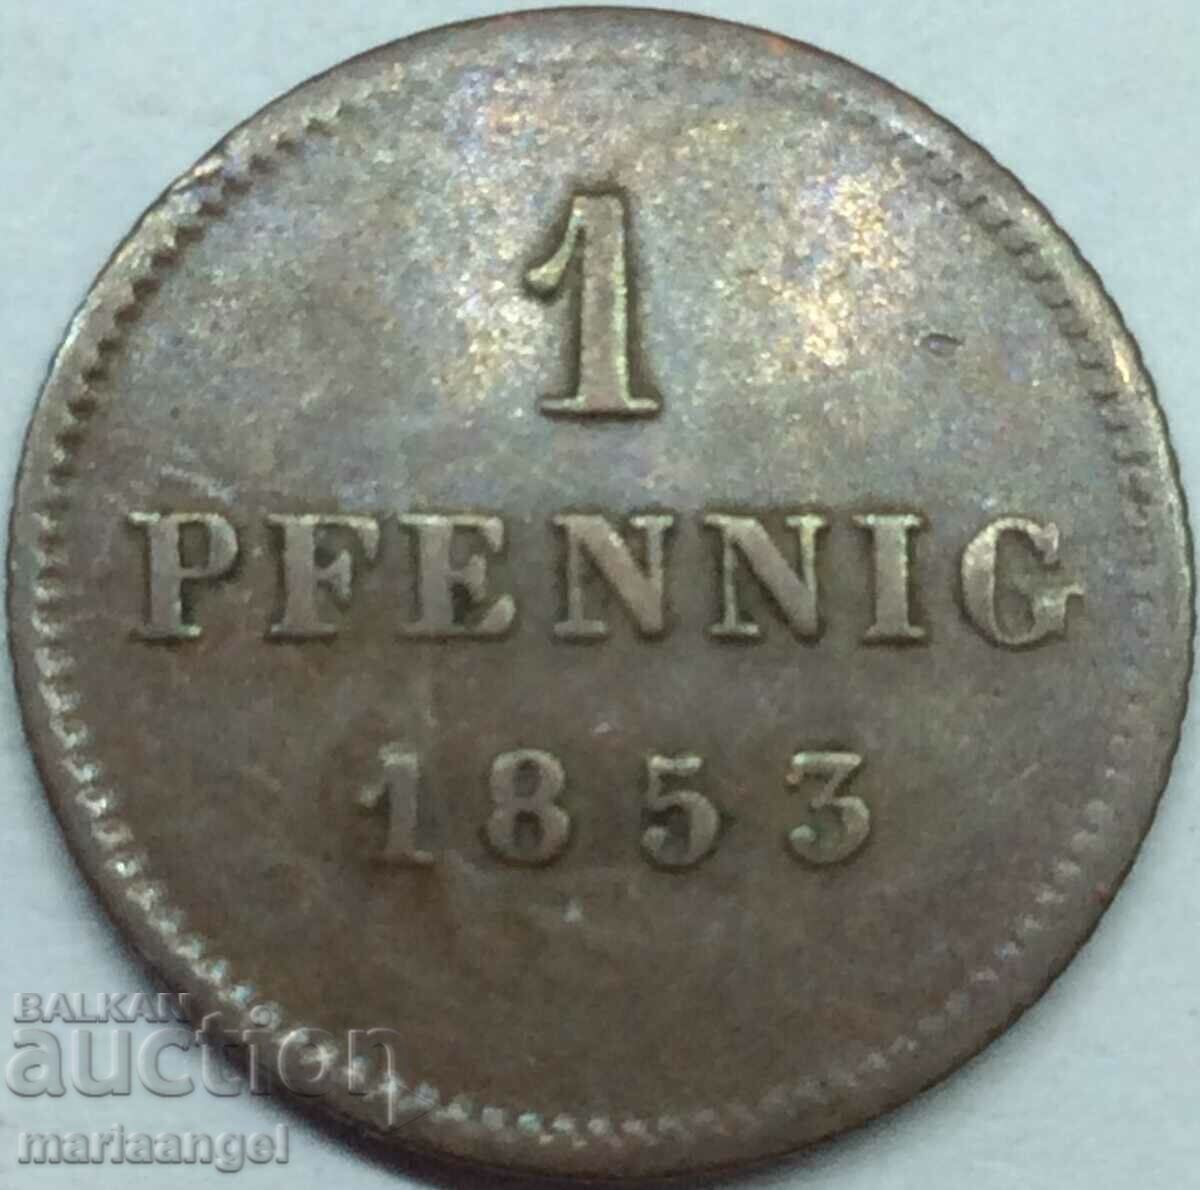 1 pfennig 1853 Bavaria Germania